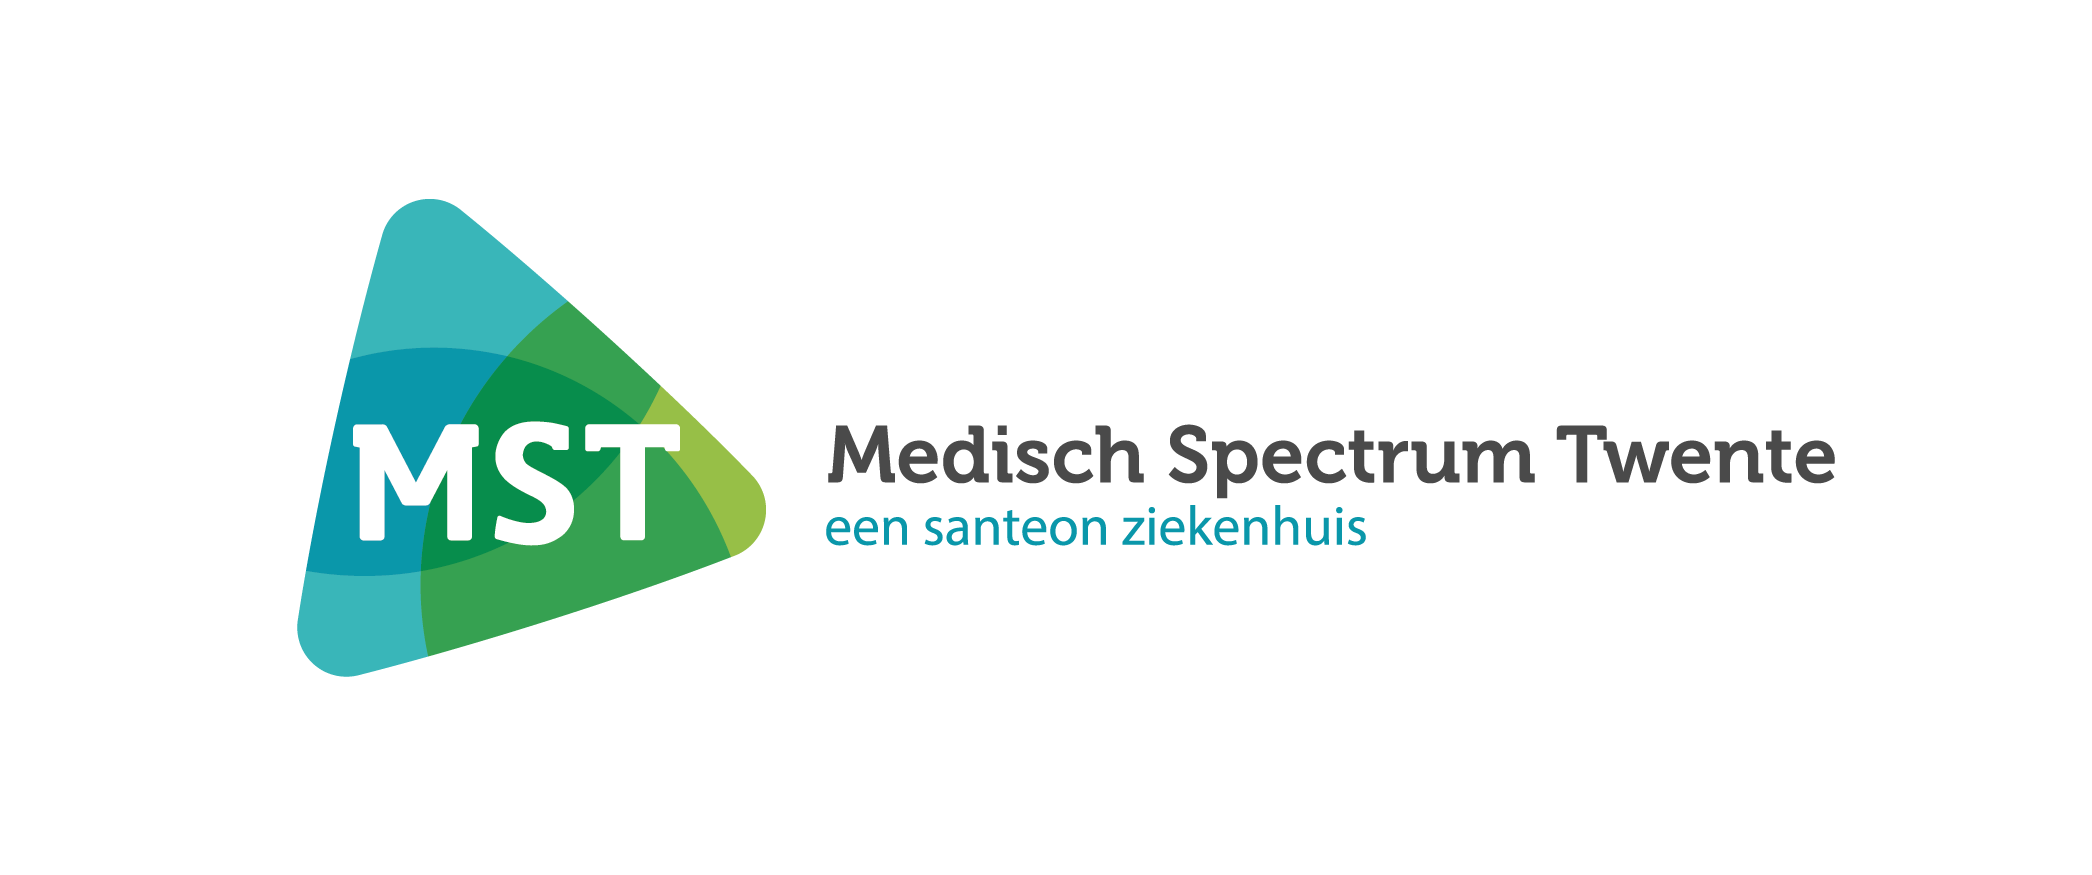 Medisch Spectrum Twente legt fietser in de watten